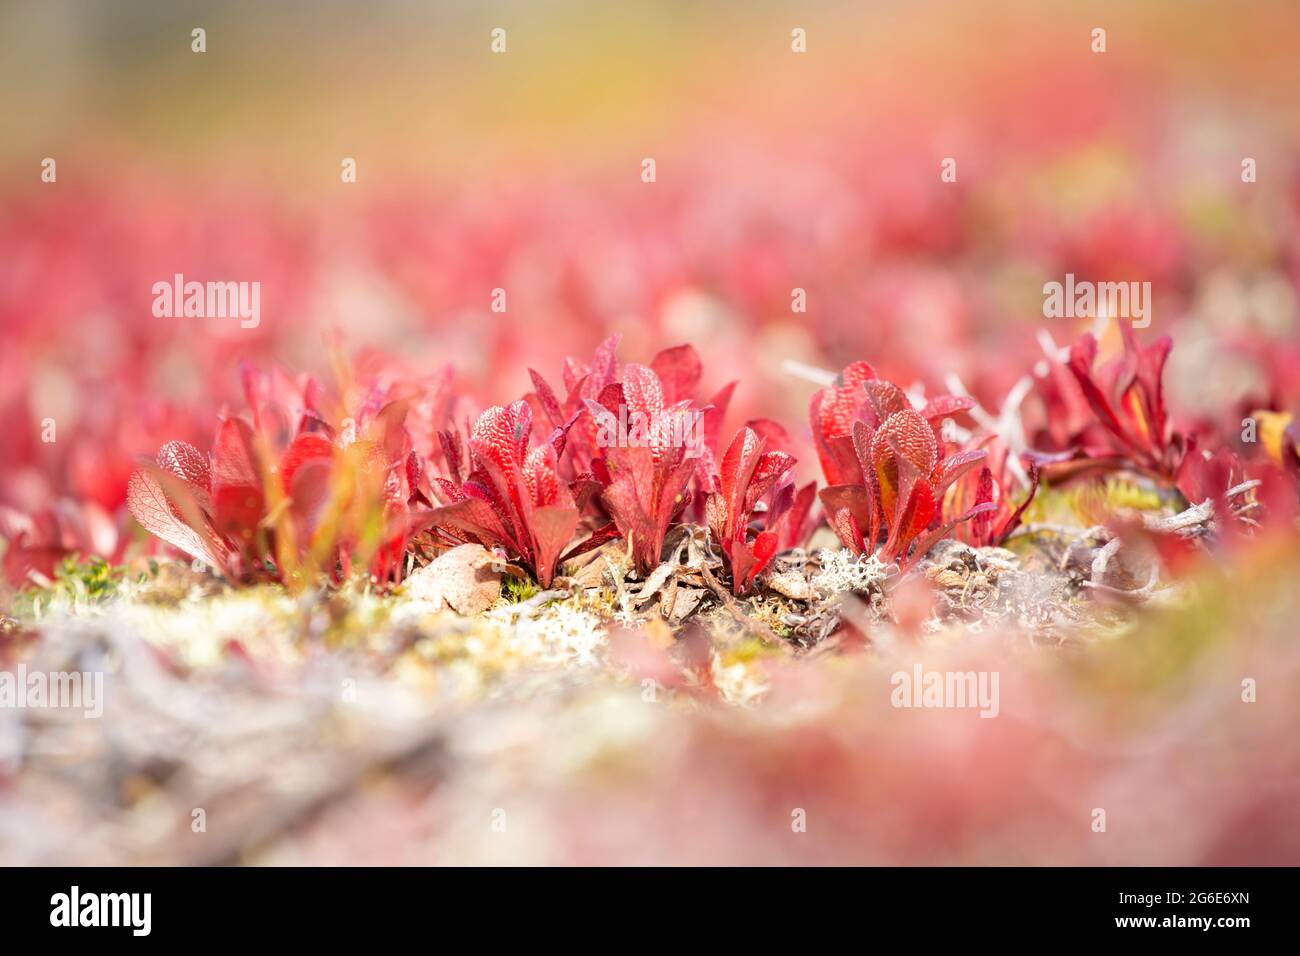 Feuilles rouges de Bearberry alpine (Arctous alpina, Arctostaphylos alpina) pendant le feuillage d'automne dans la nature du nord de la Finlande Banque D'Images